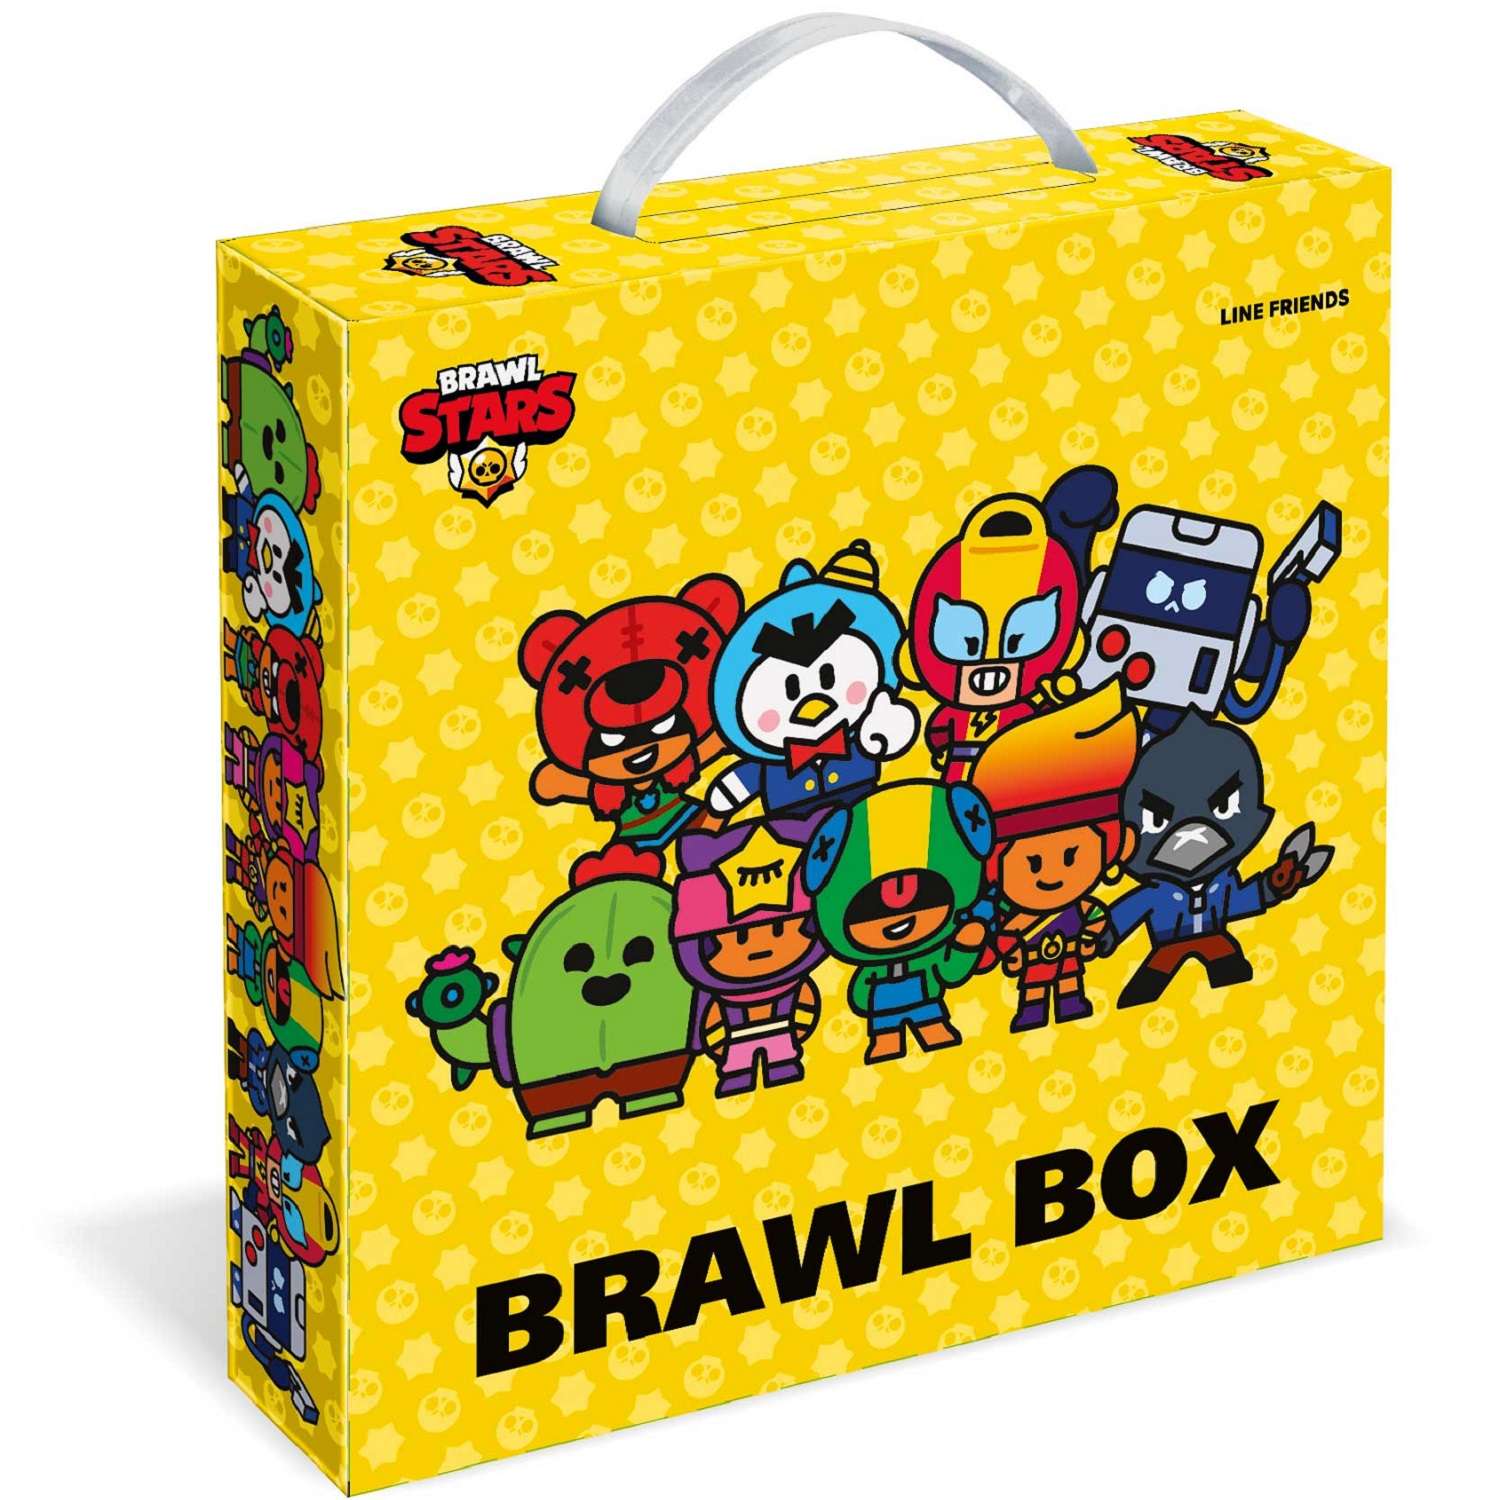 Подарочный набор BRAWL BOX BrawlStars канцелярия для школы Бравл Старс Герои - фото 1